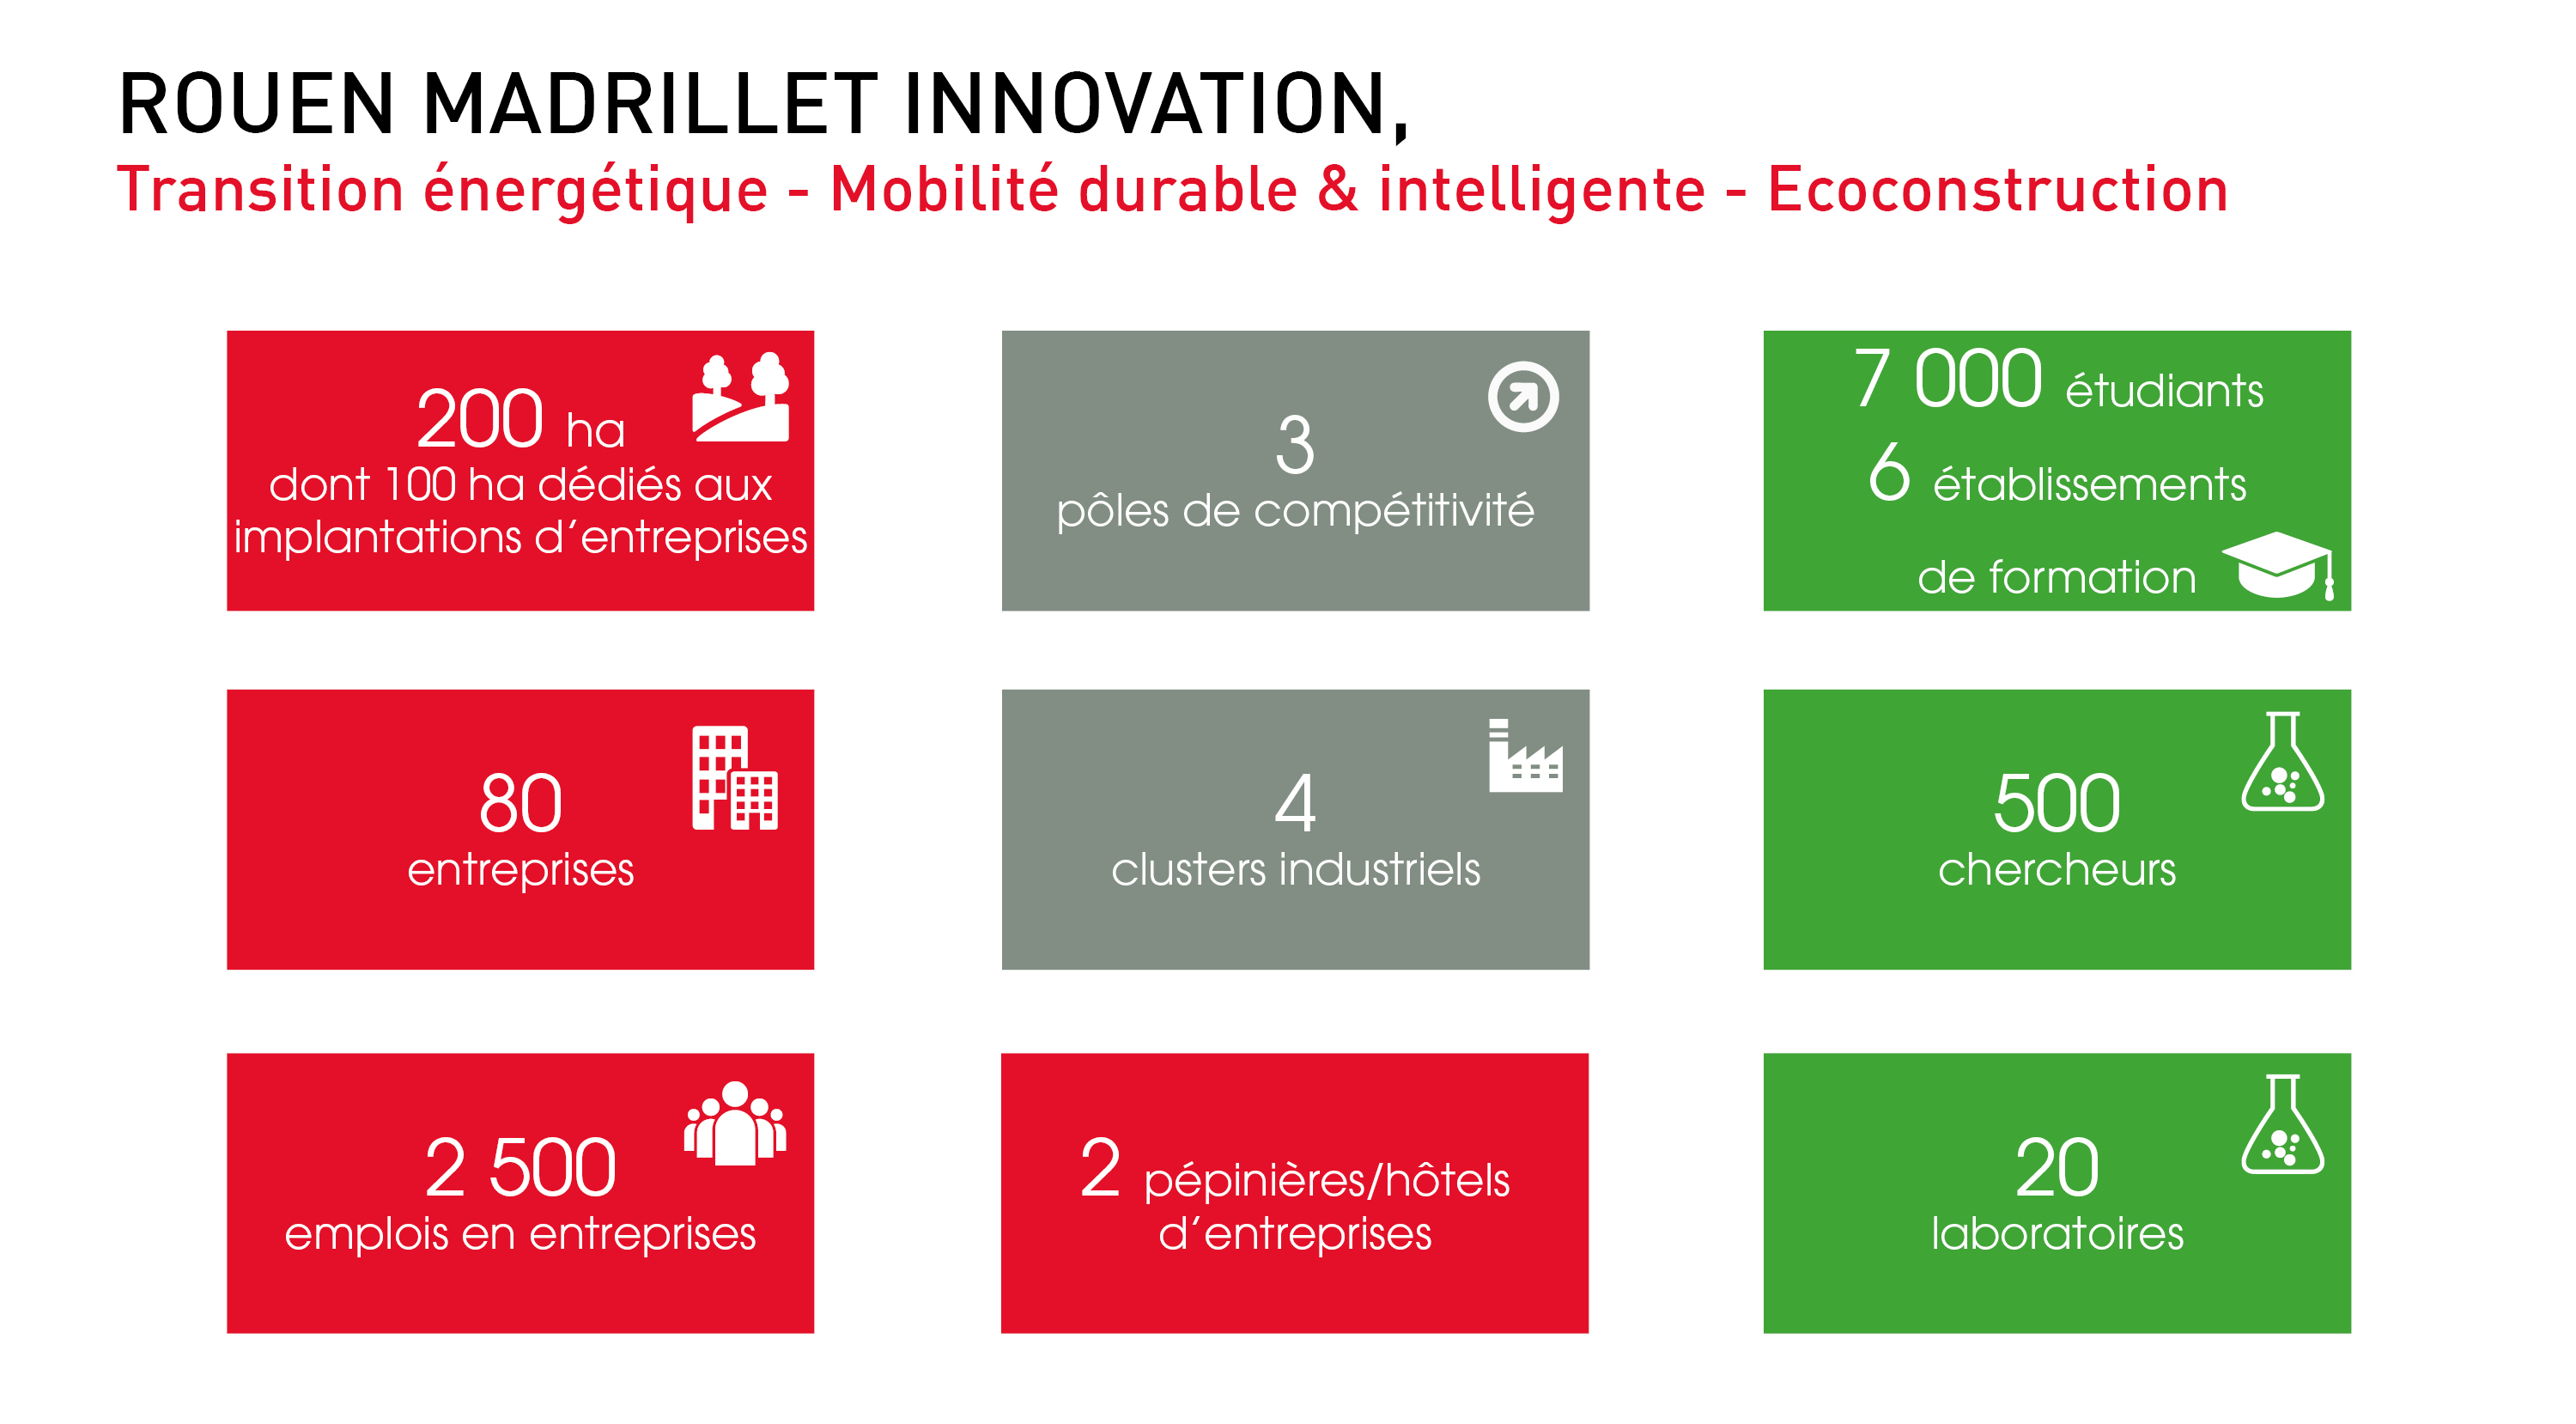 Rouen Madrillet Innovation, un parc dédié aux entreprises innovantes